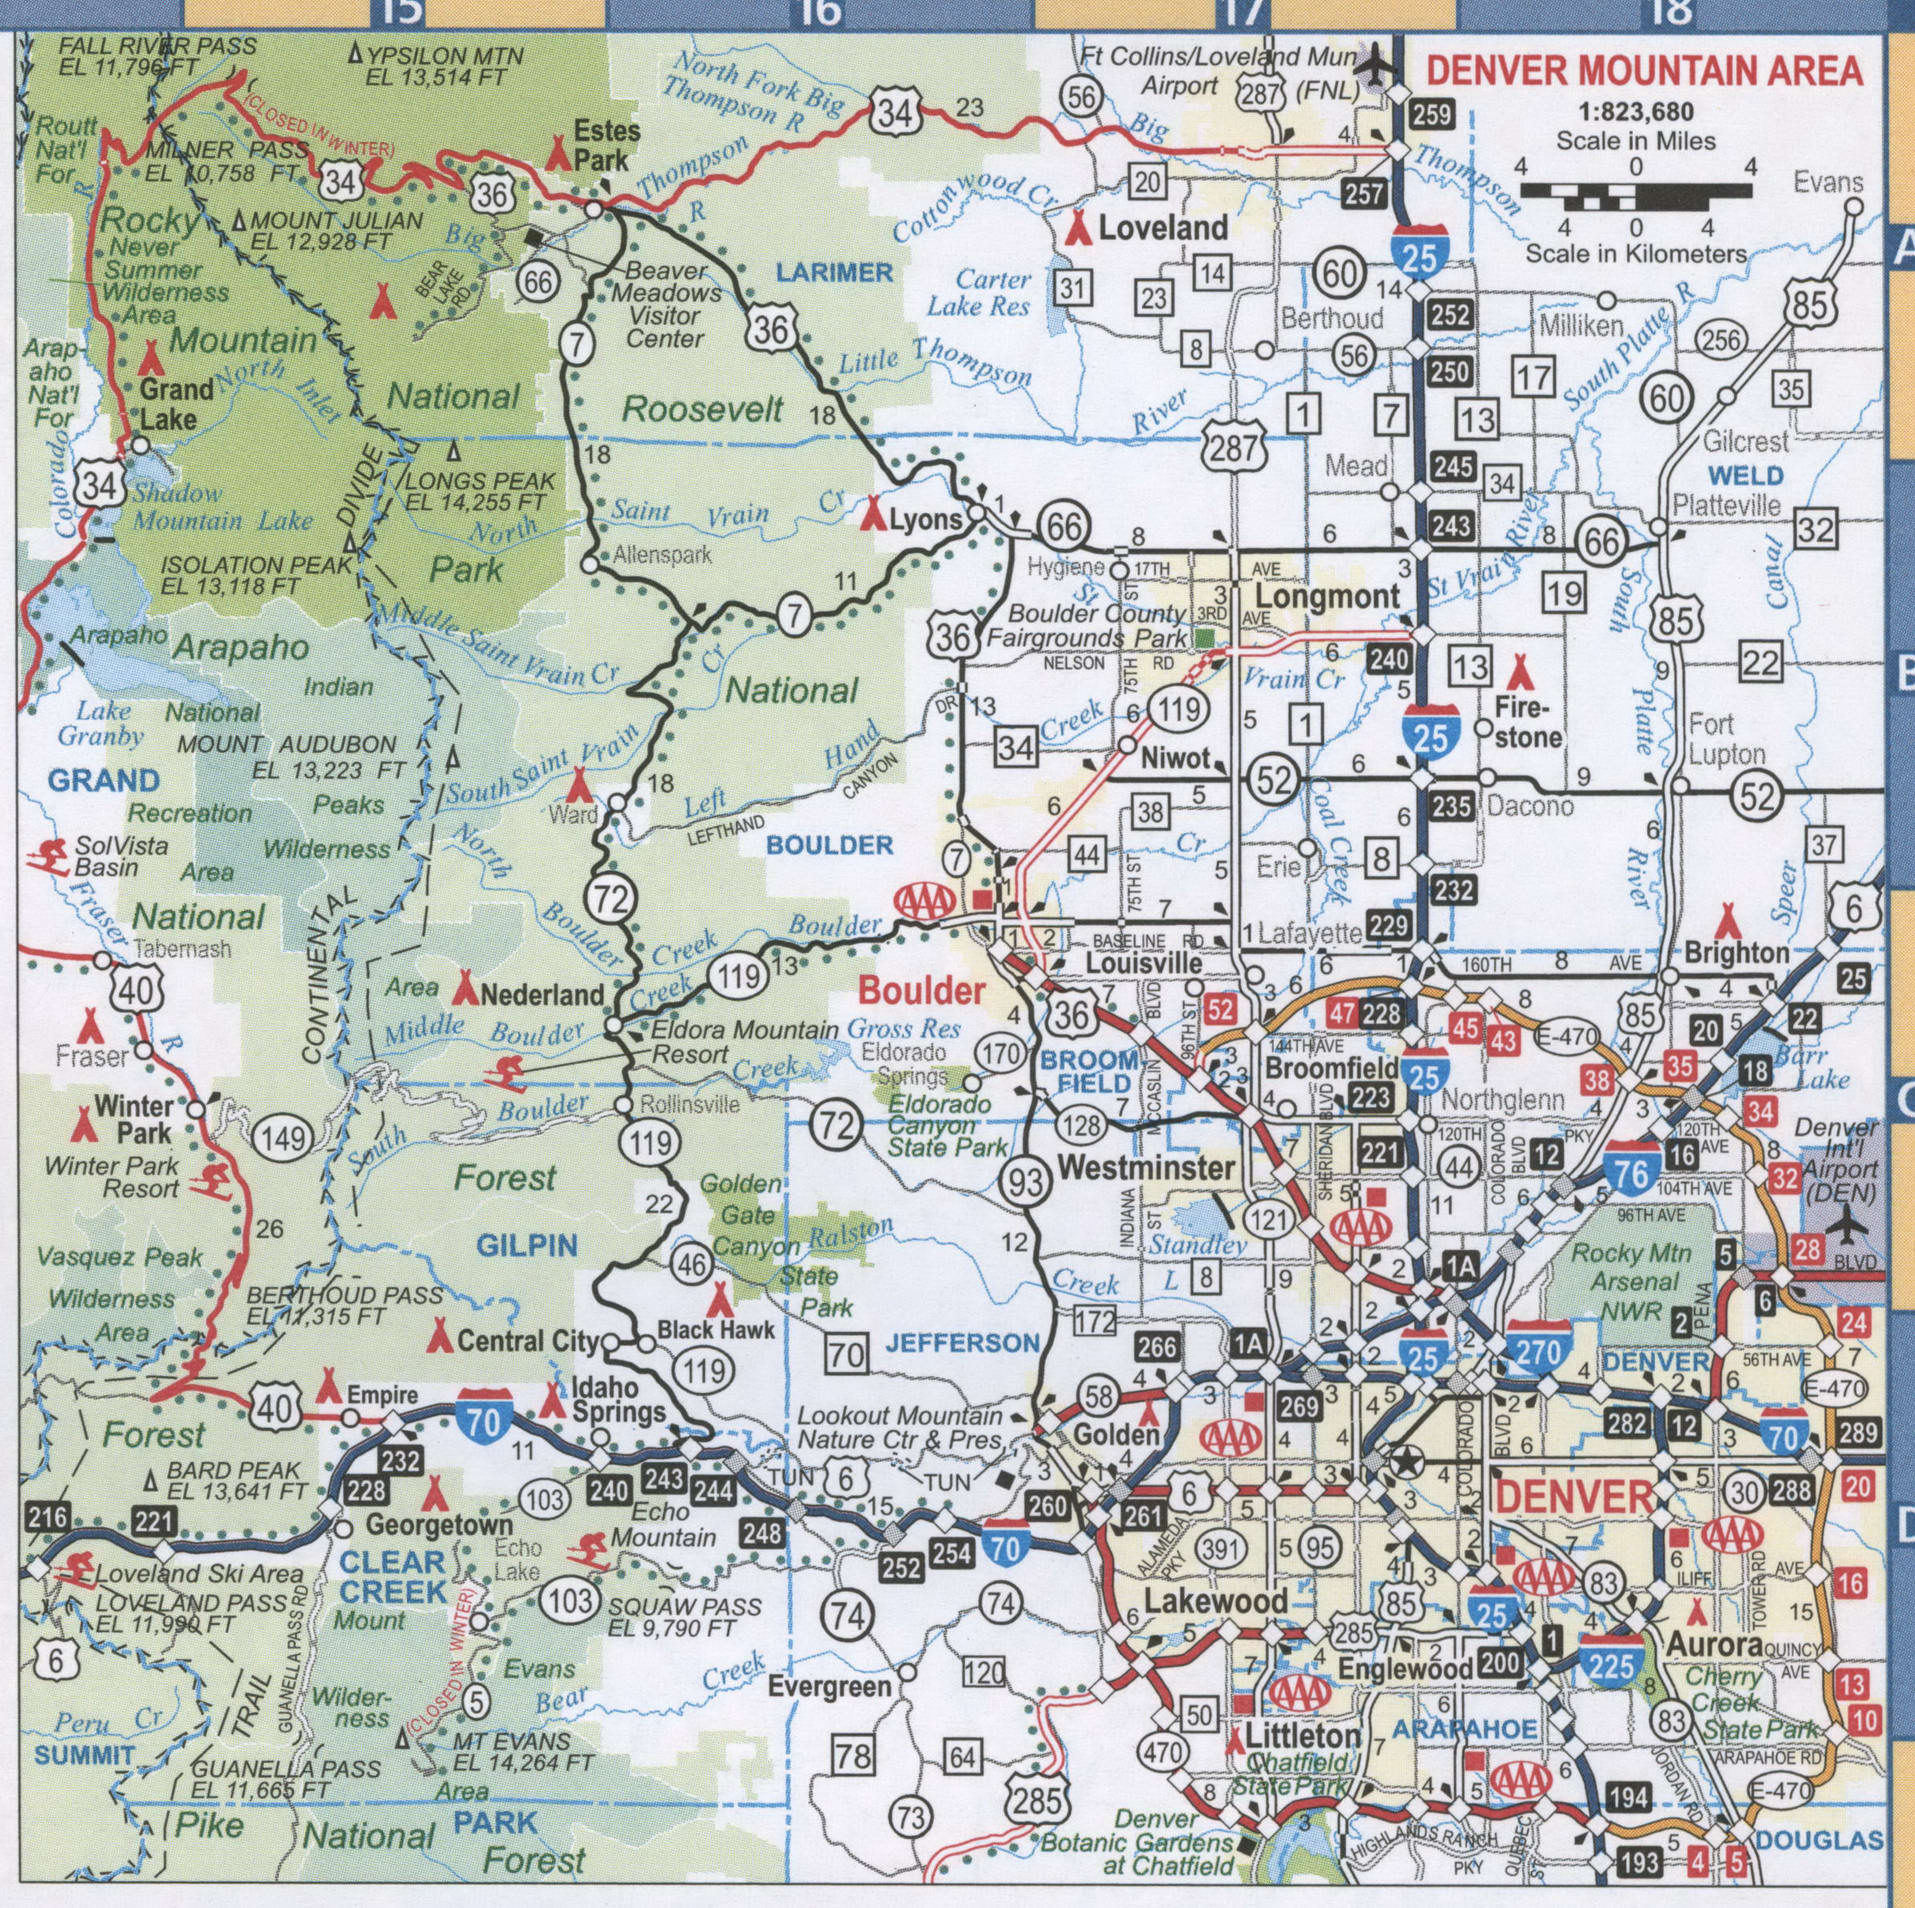 Denver mountain area map